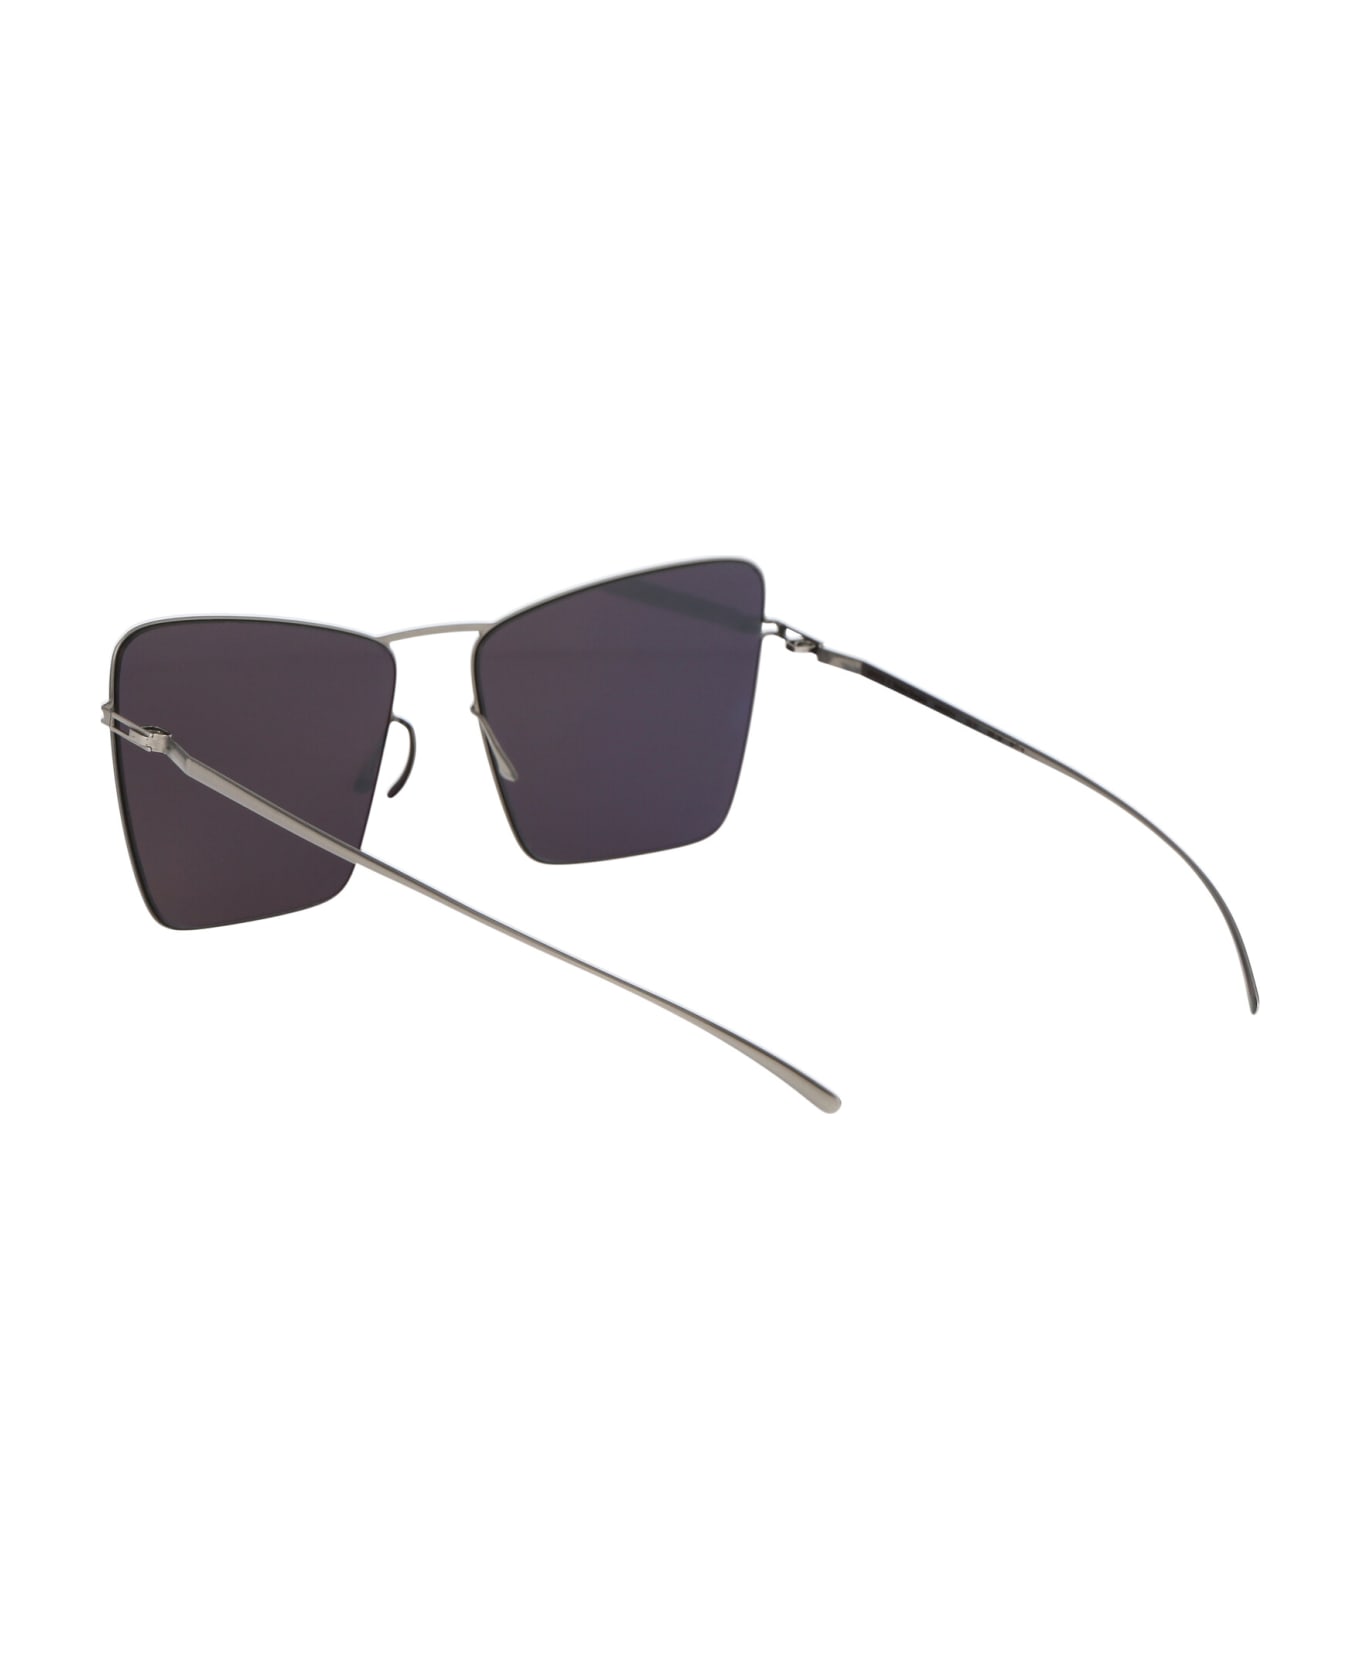 Mykita Mmesse014 Sunglasses - 187 E1 Silver Silver Flash